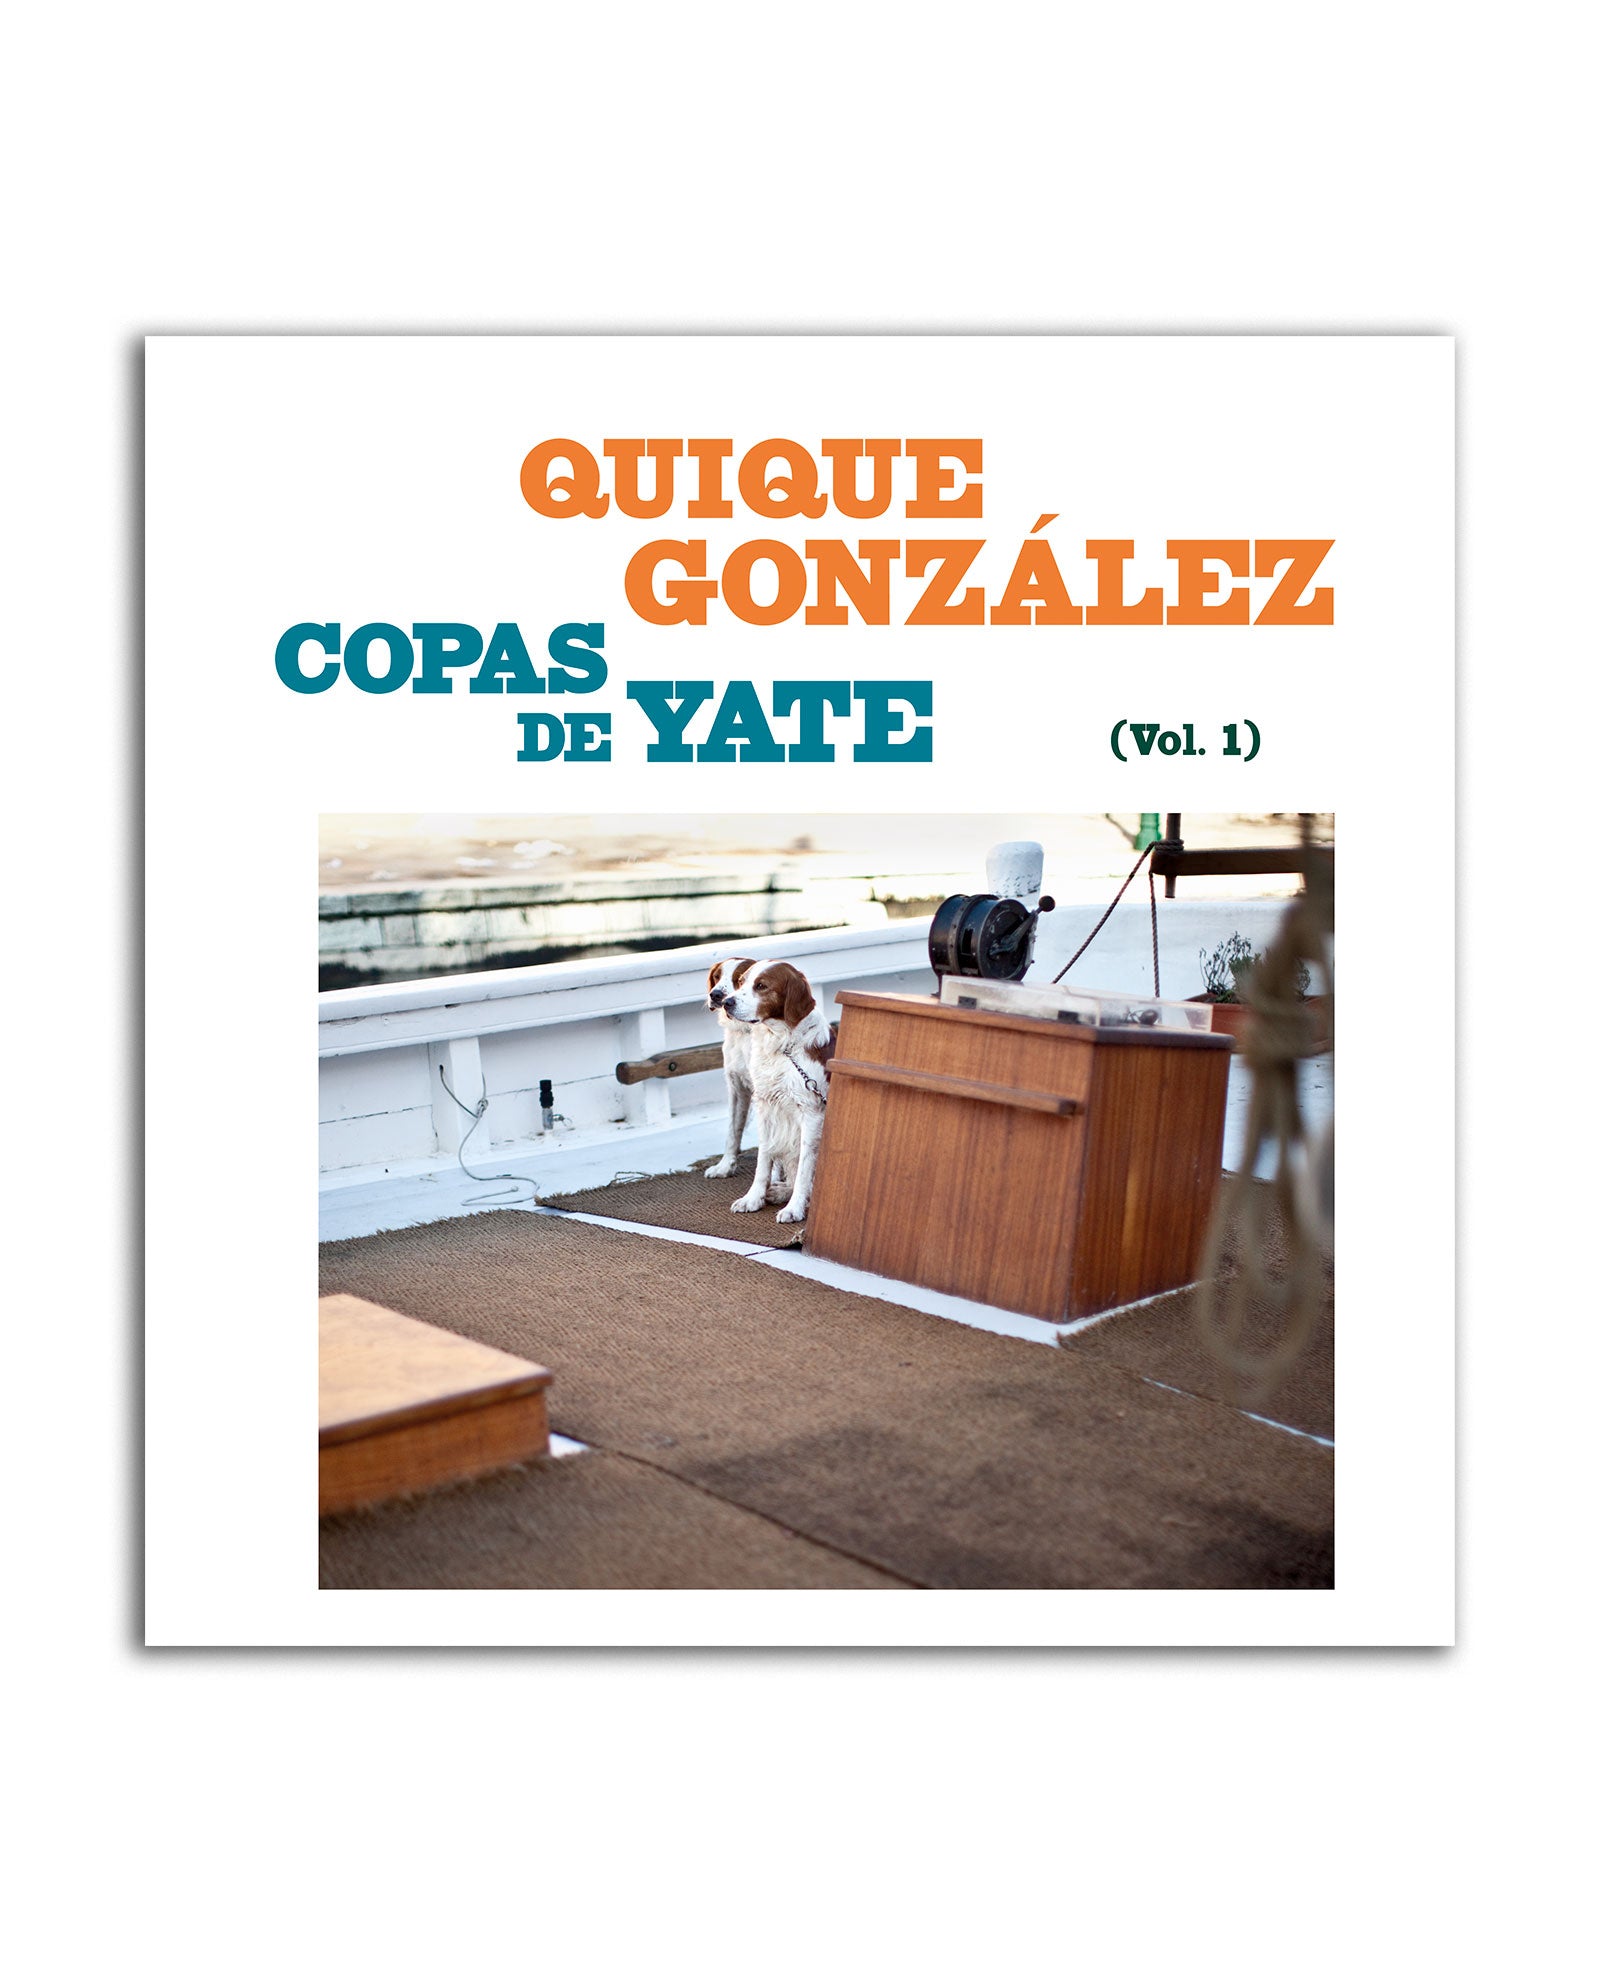 Quique González - LP Vinilo + CD "Copas de Yate (Vol. I)" - D2fy · Rocktud - Quique González